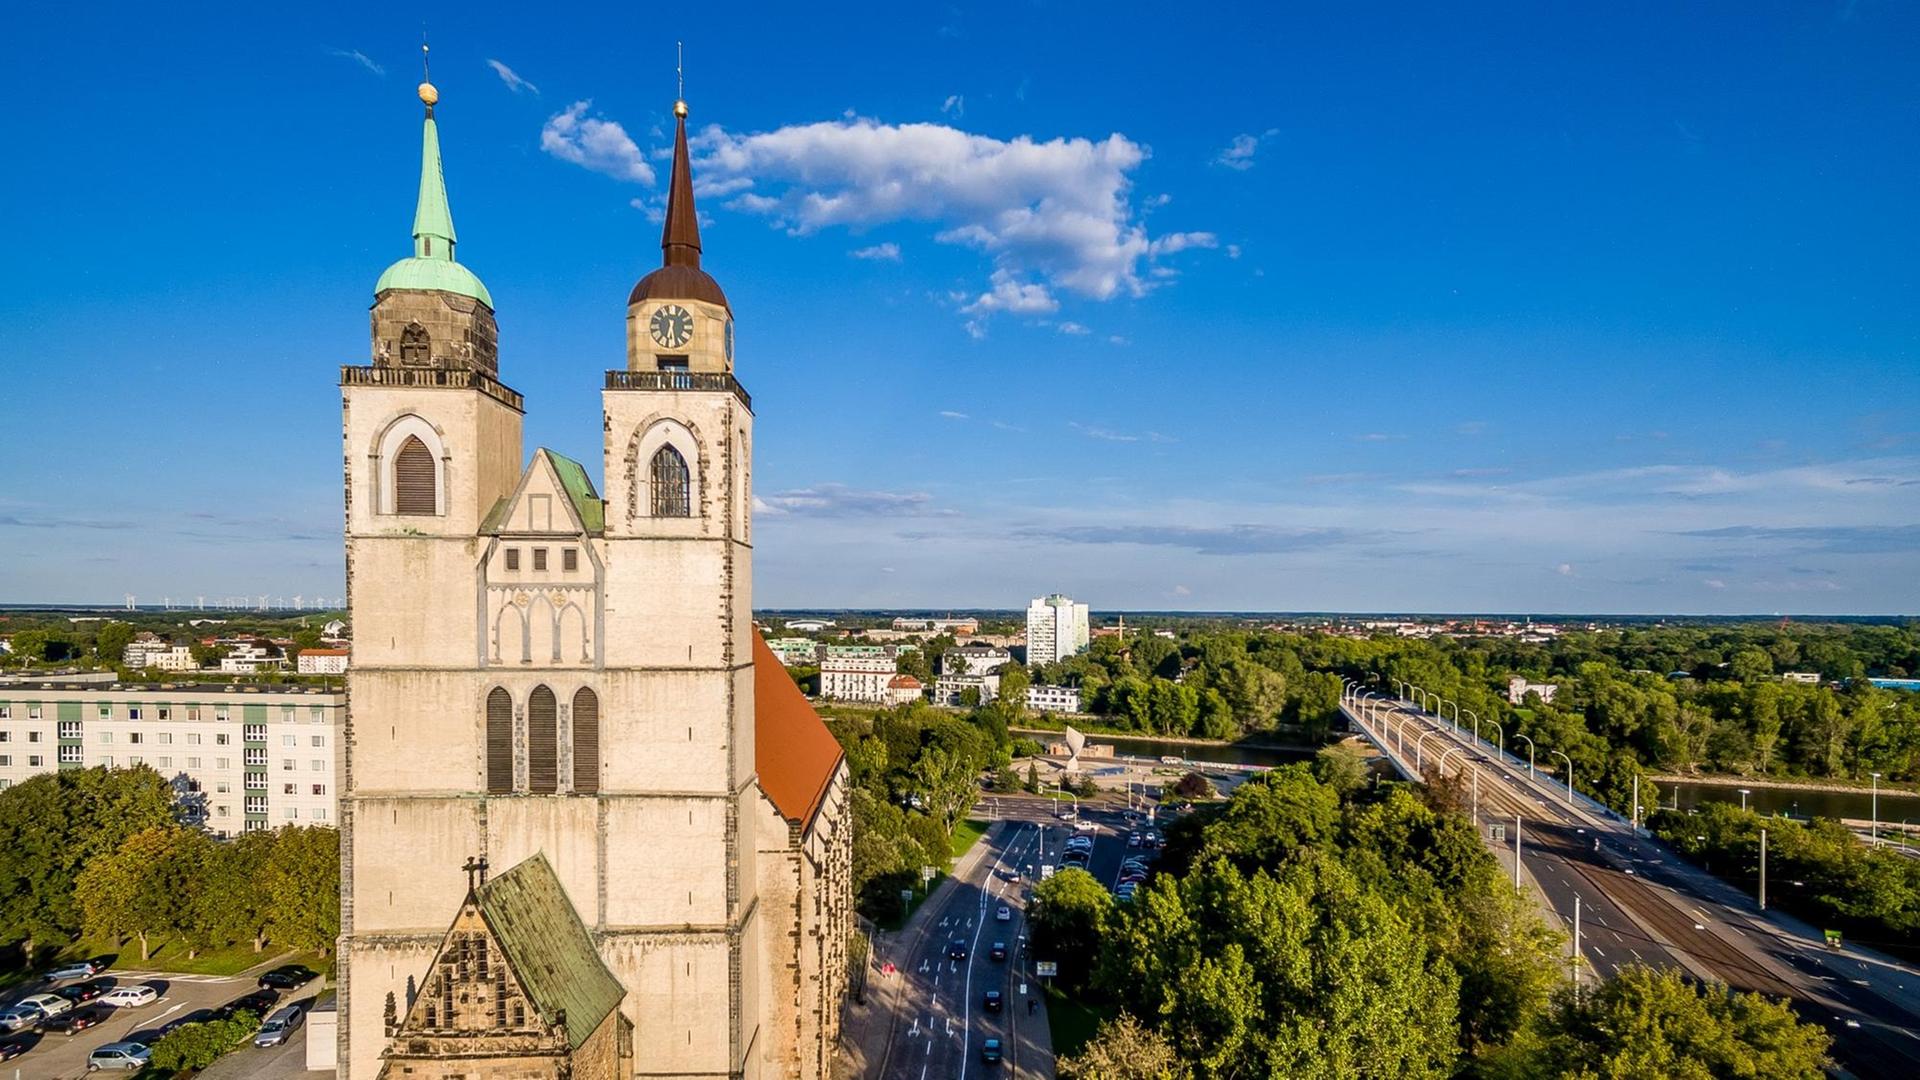 Blick auf die Doppelturmfront der Johanniskirche in Magdeburg, an der Johann Heinrich Rolle als Organist tätig war